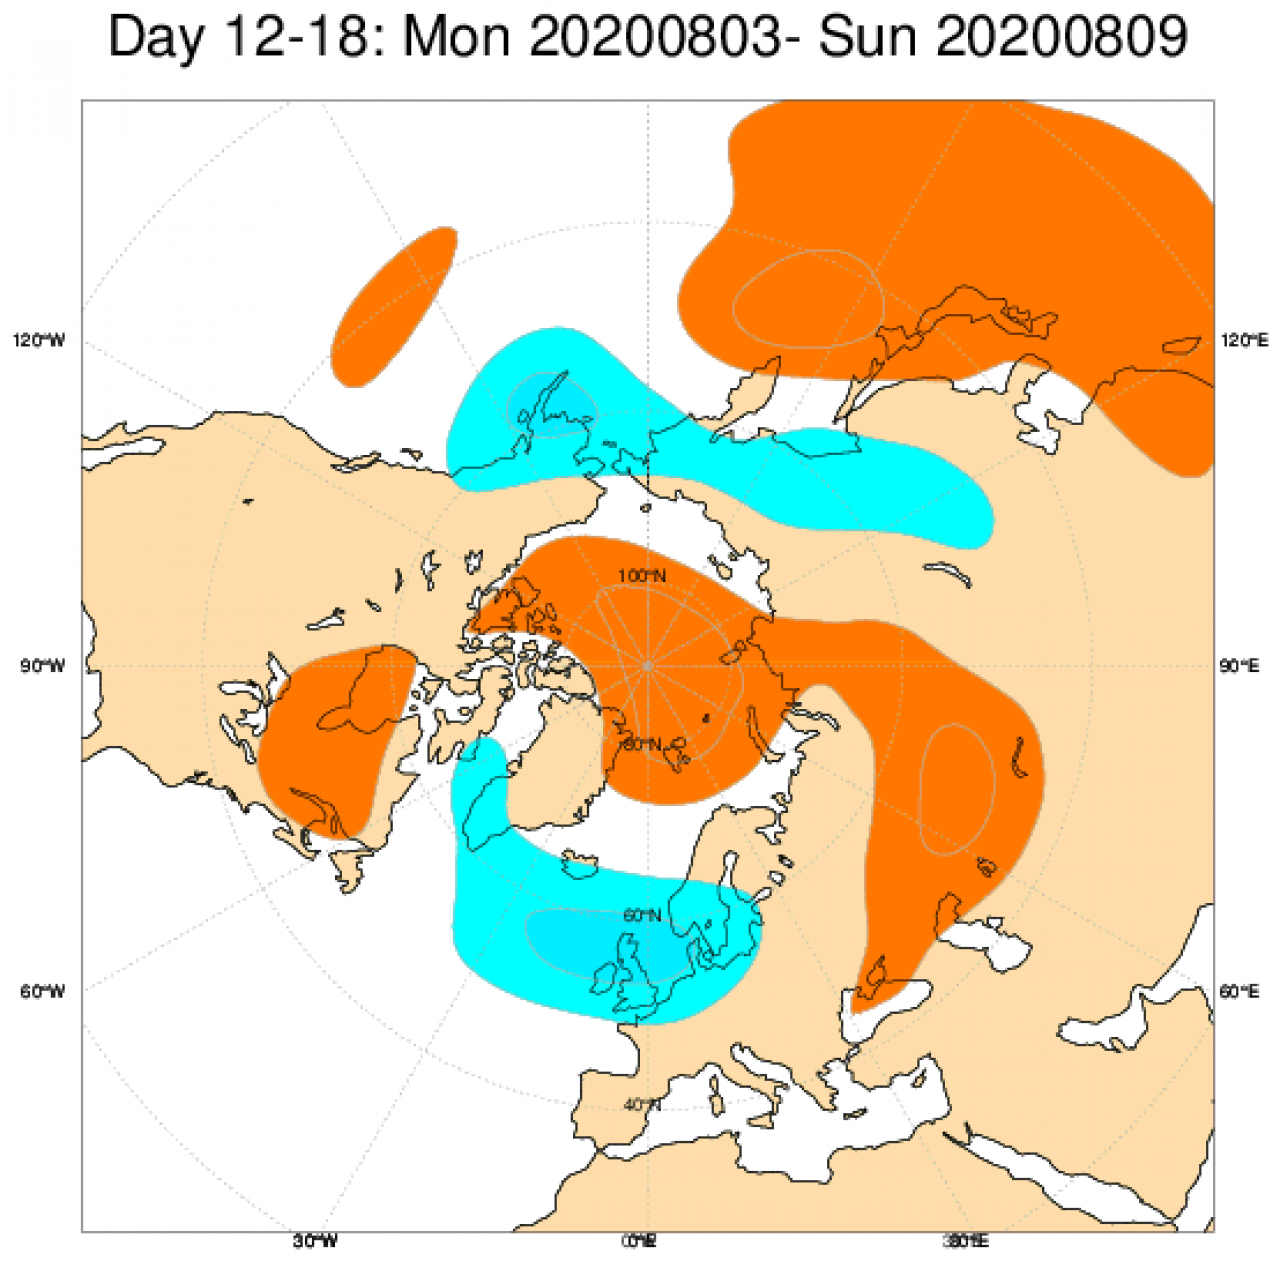 Le anomalie di geopotenziale a 500hPa da modello ECMWF mediate sul periodo 3-9 agosto